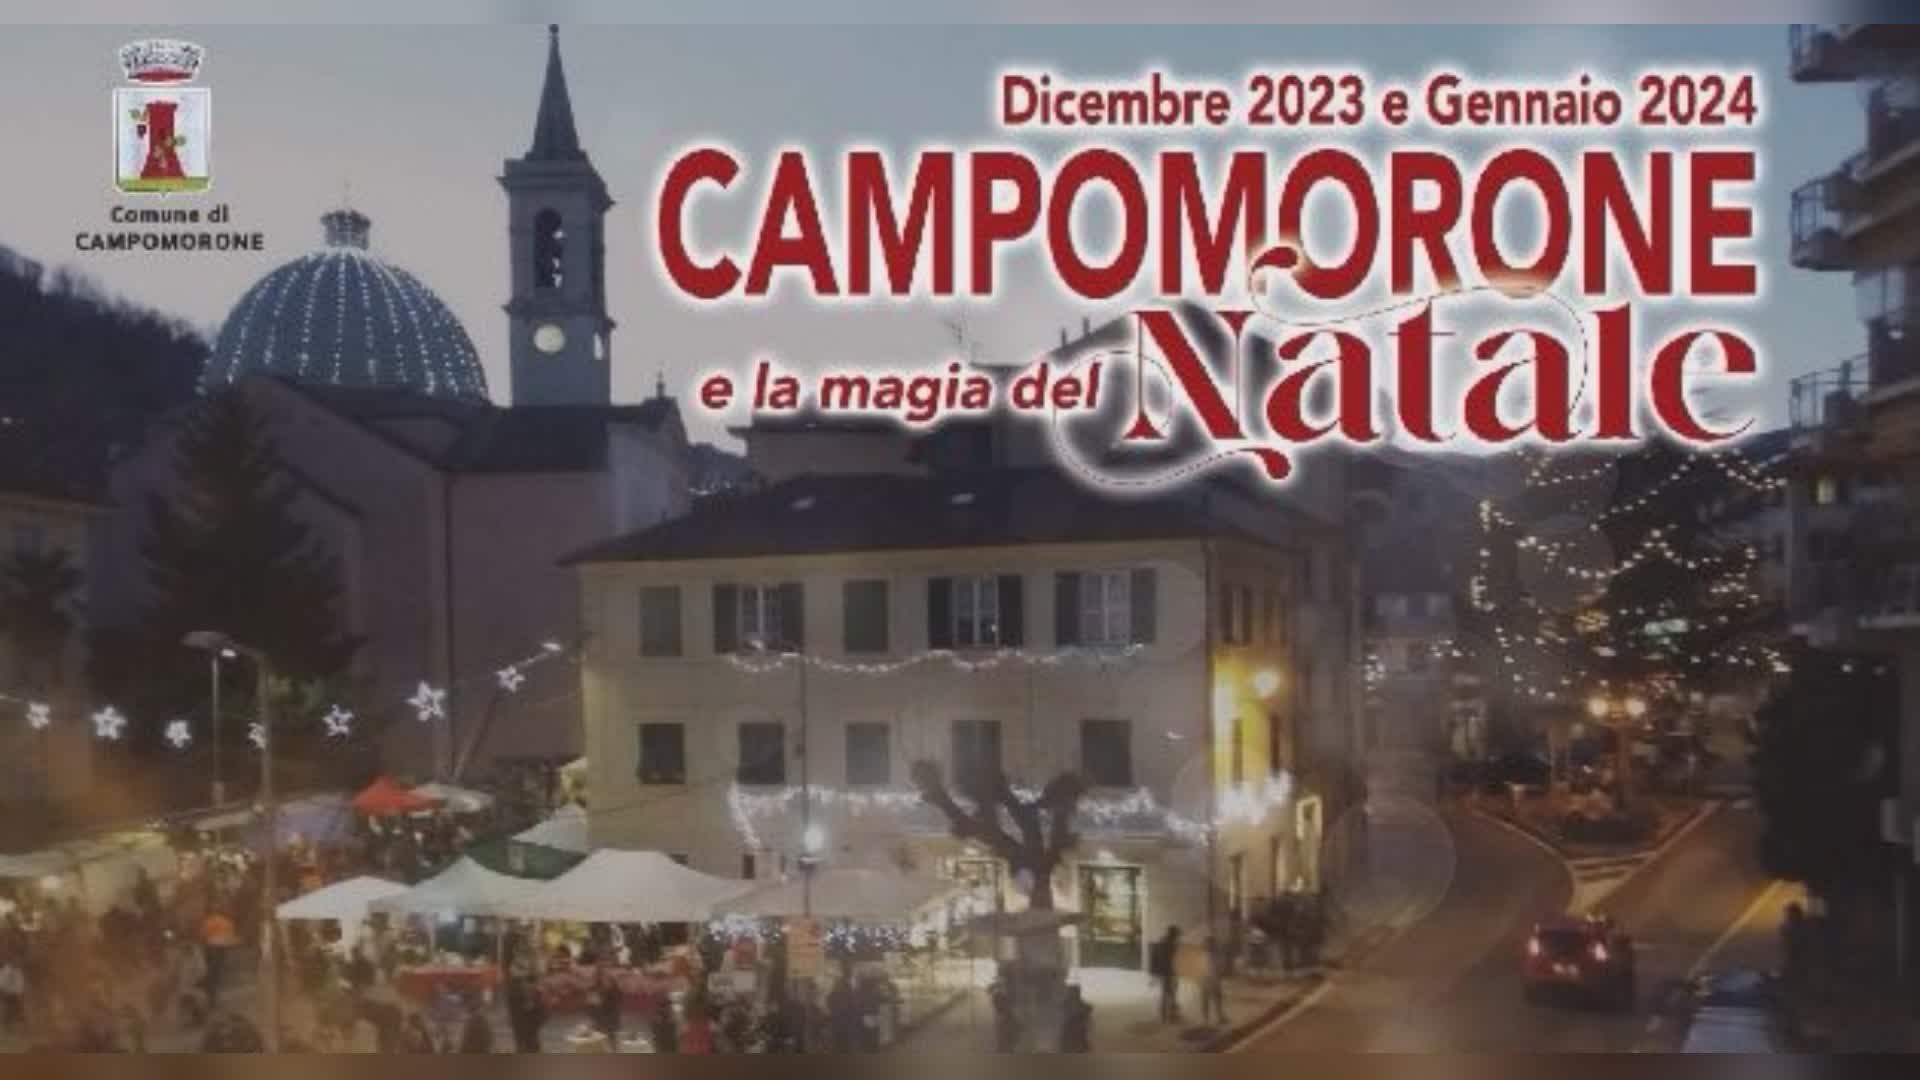 Campomorone: tutti gli eventi per le feste di Natale. gli appuntamenti dell'8 dicembre slittano al 6 gennaio